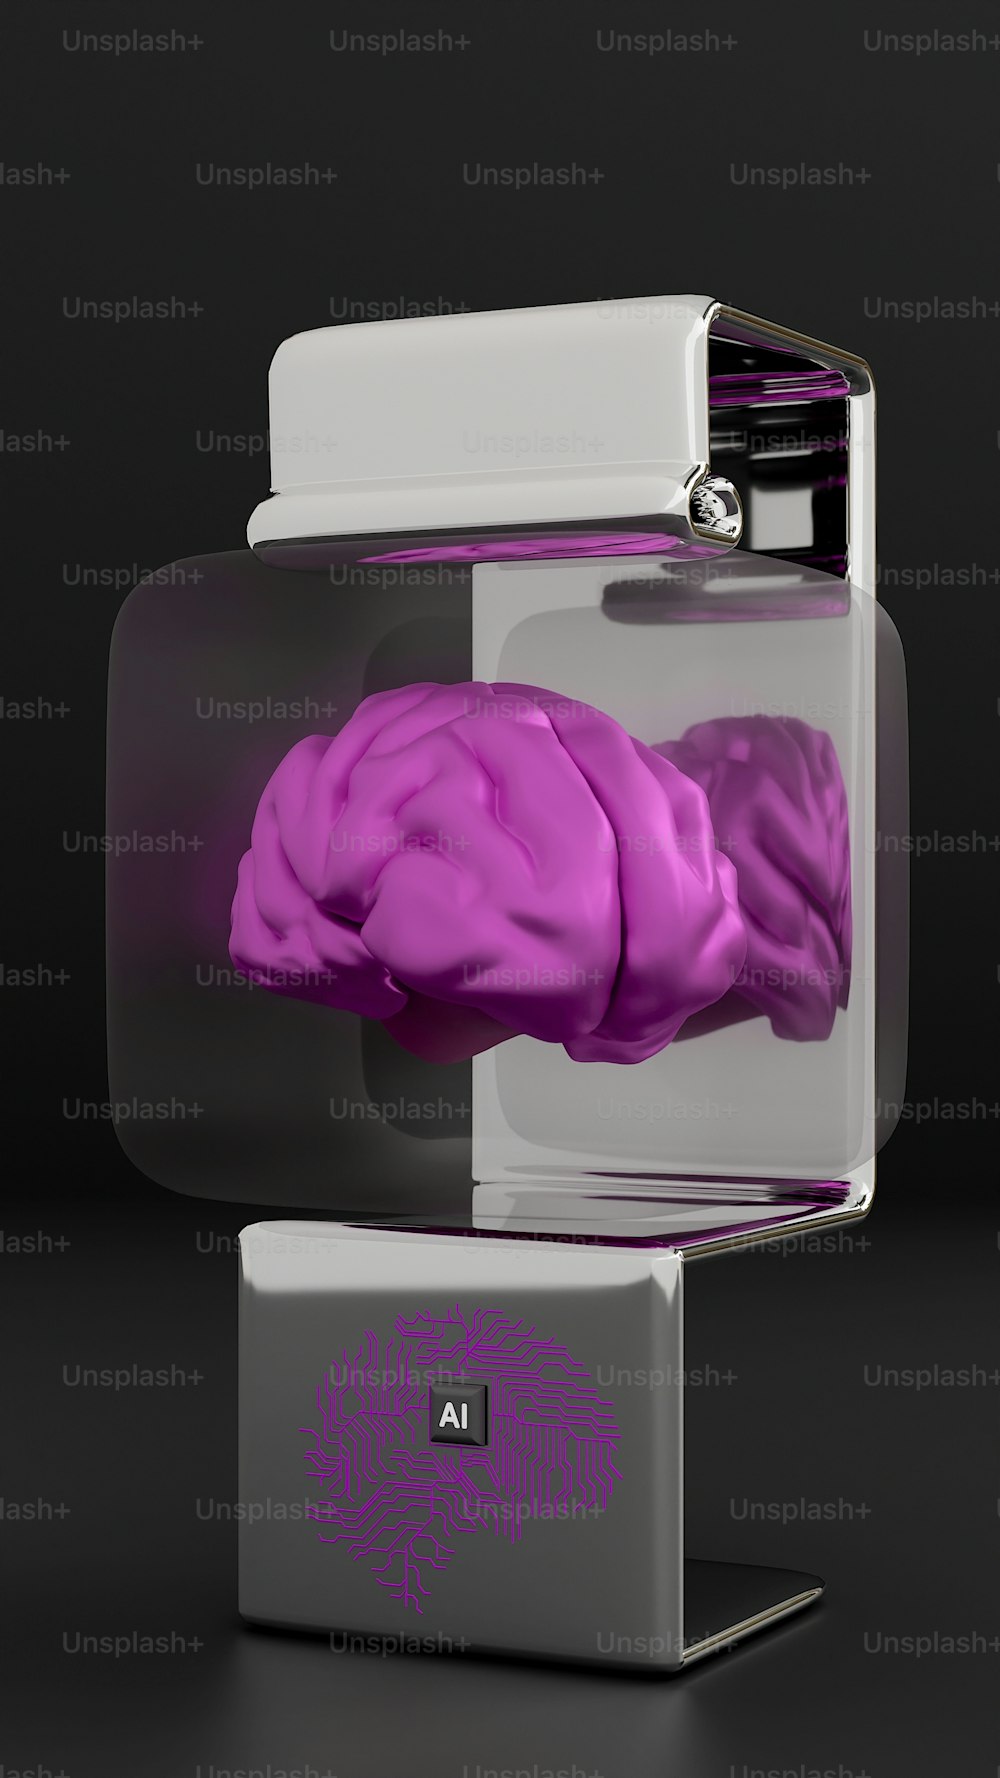 a purple model of a human brain in a glass case